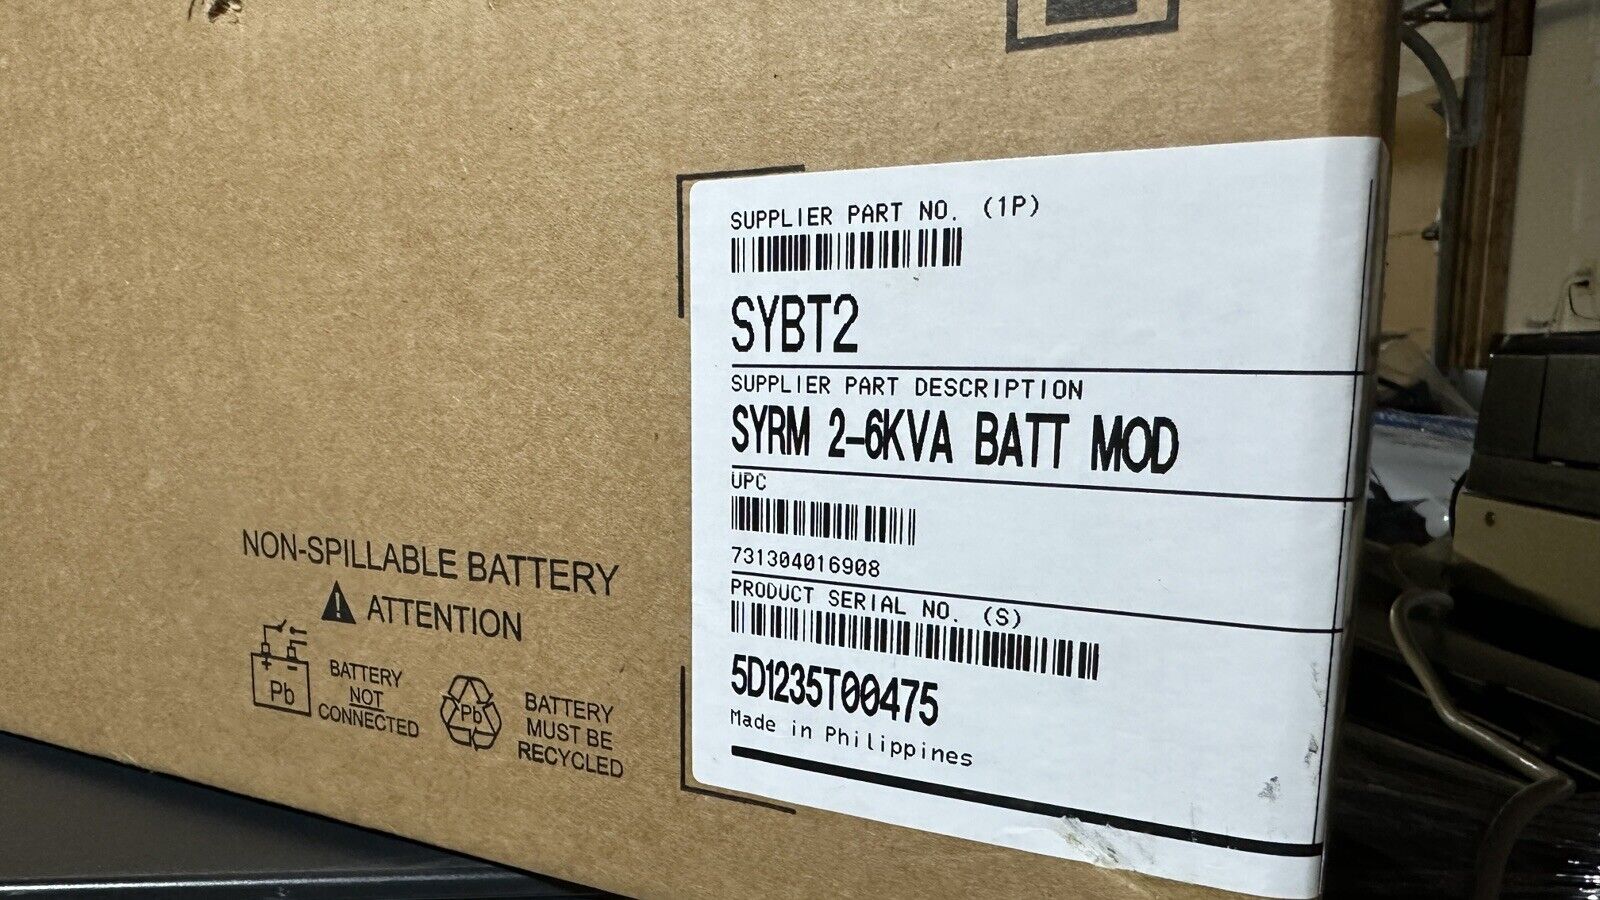 APC SYRM 2-6KVA Battery Module (SYBT2)